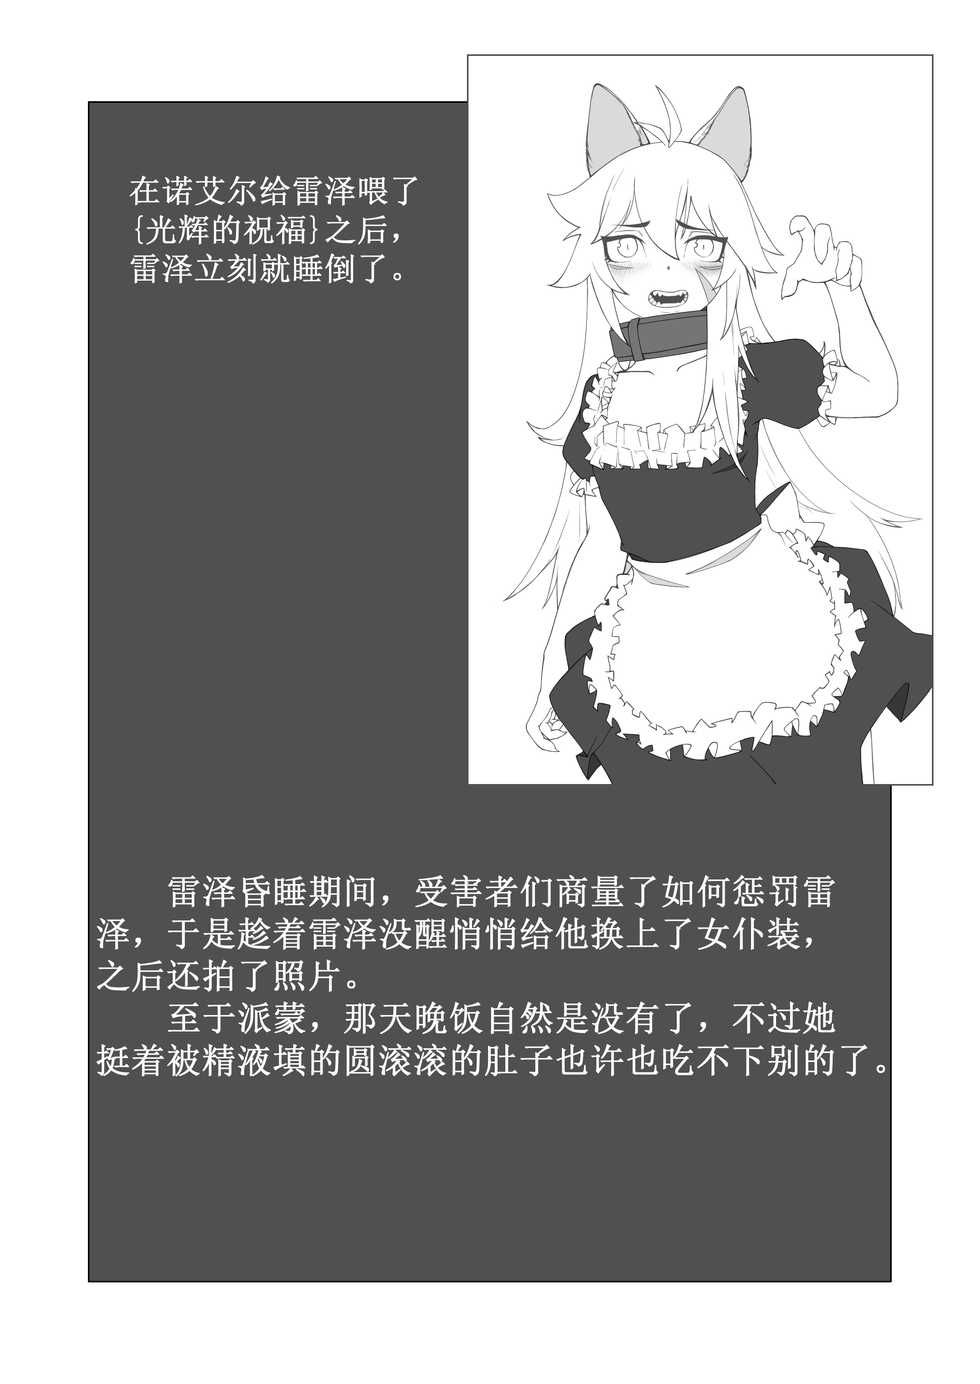 [灰鸟 shoebill] 原神本子练习 (Genshin Impact) [Chinese] - Page 13